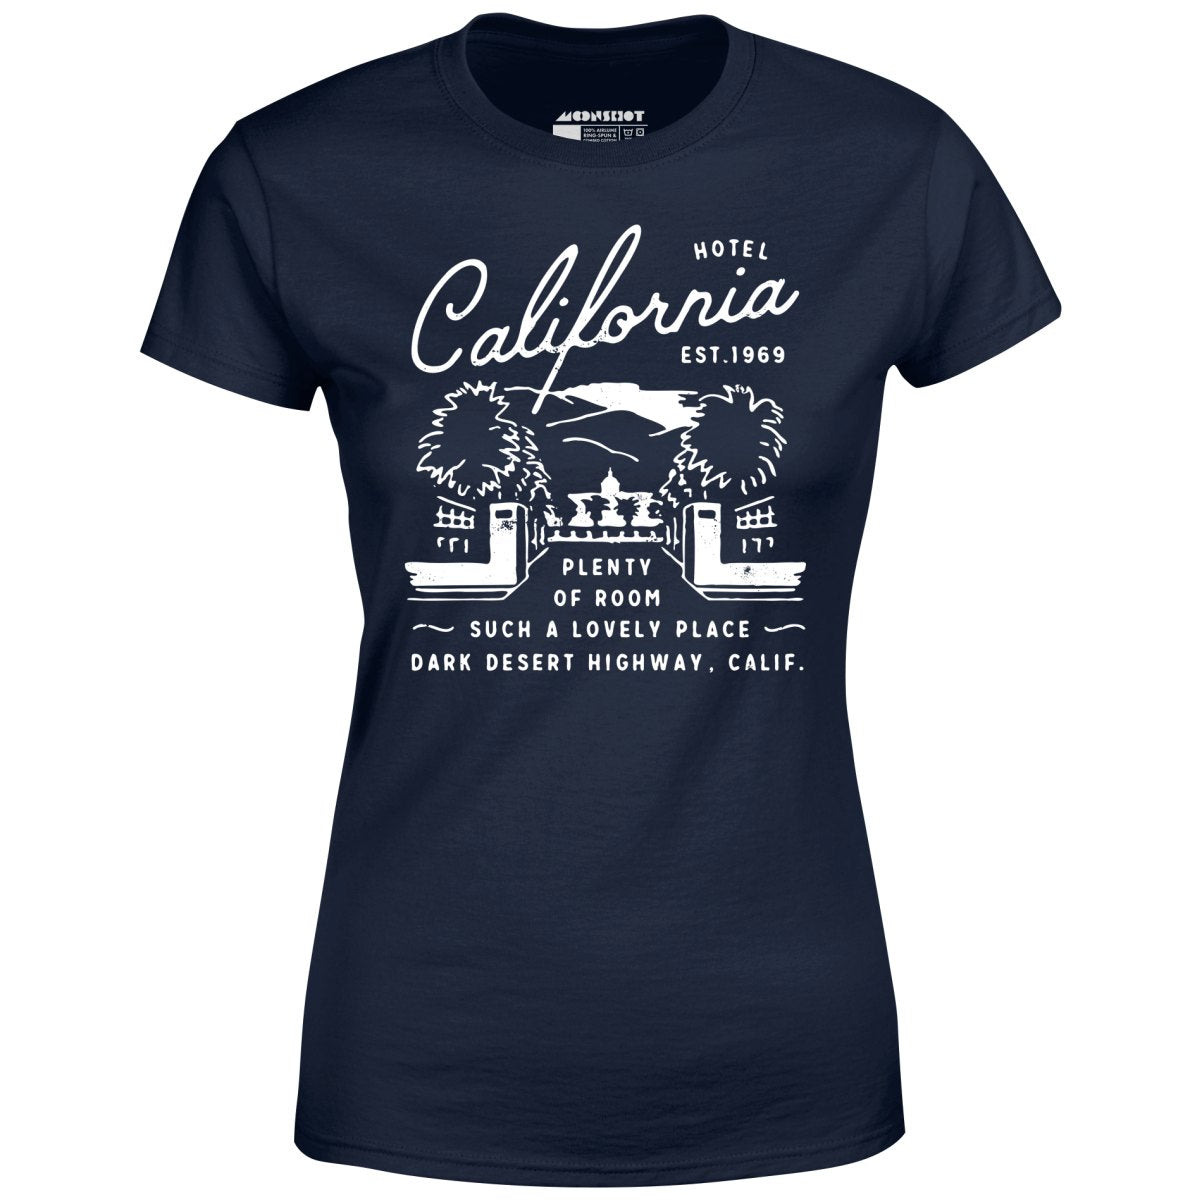 Hotel California - Women's T-Shirt